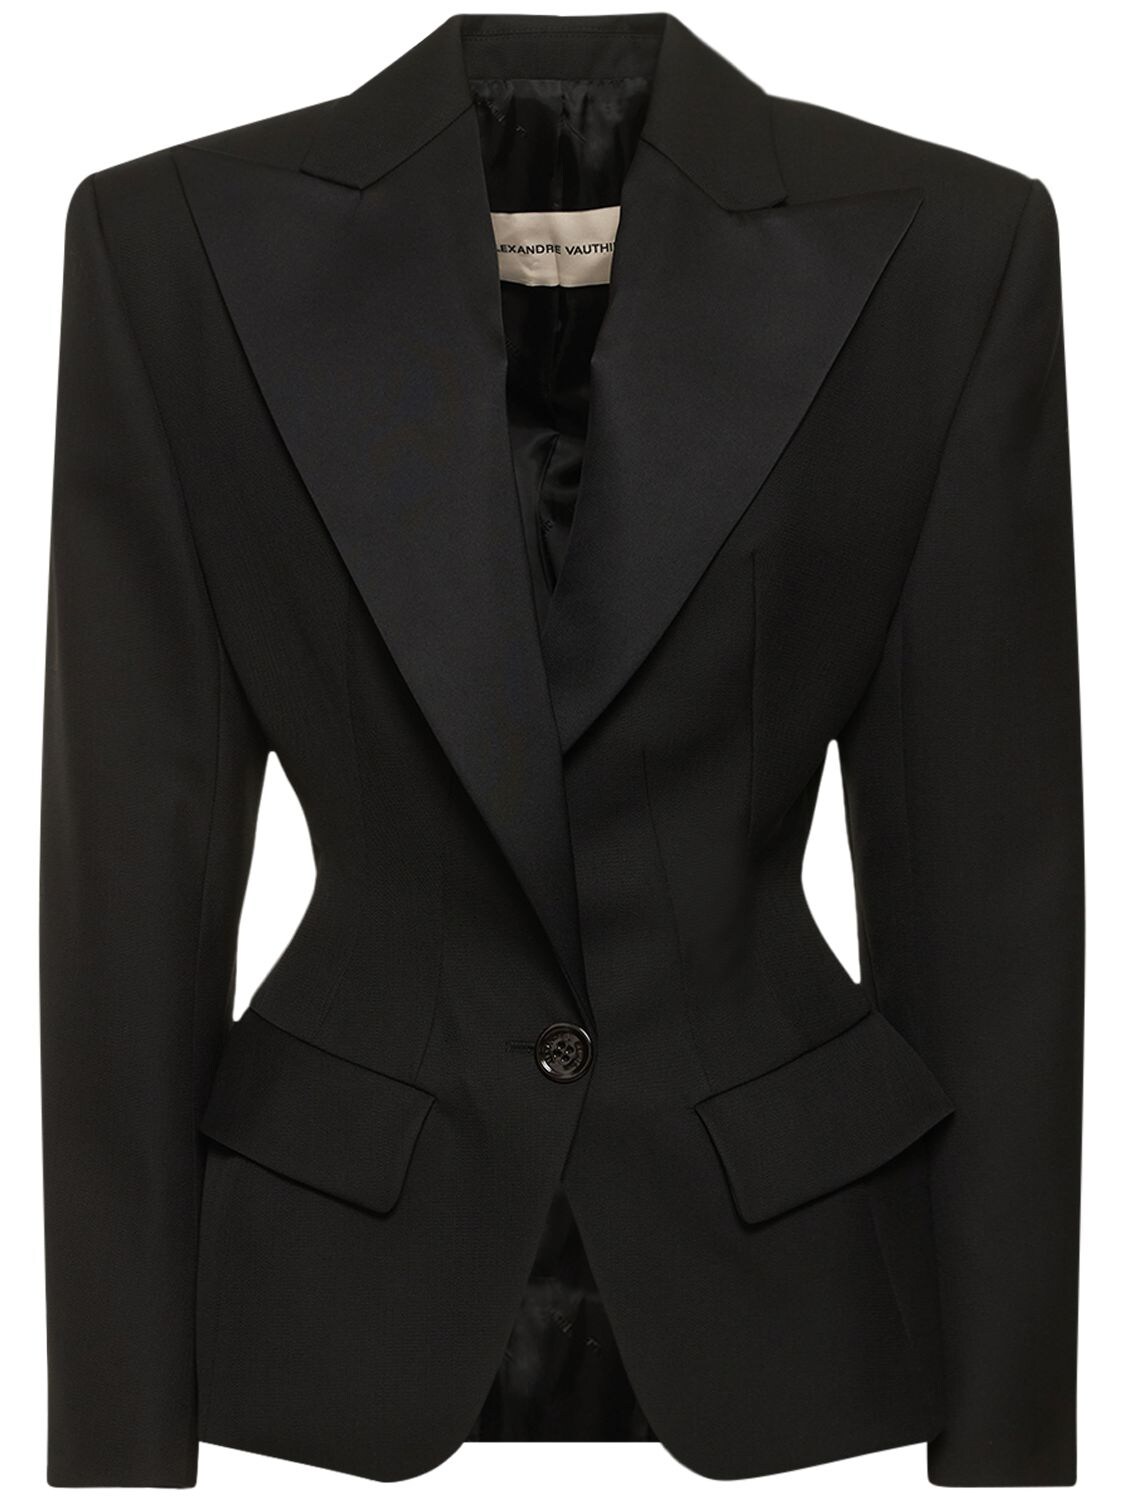 Couture Grain De Poudre Tuxedo Jacket - ALEXANDRE VAUTHIER - Modalova